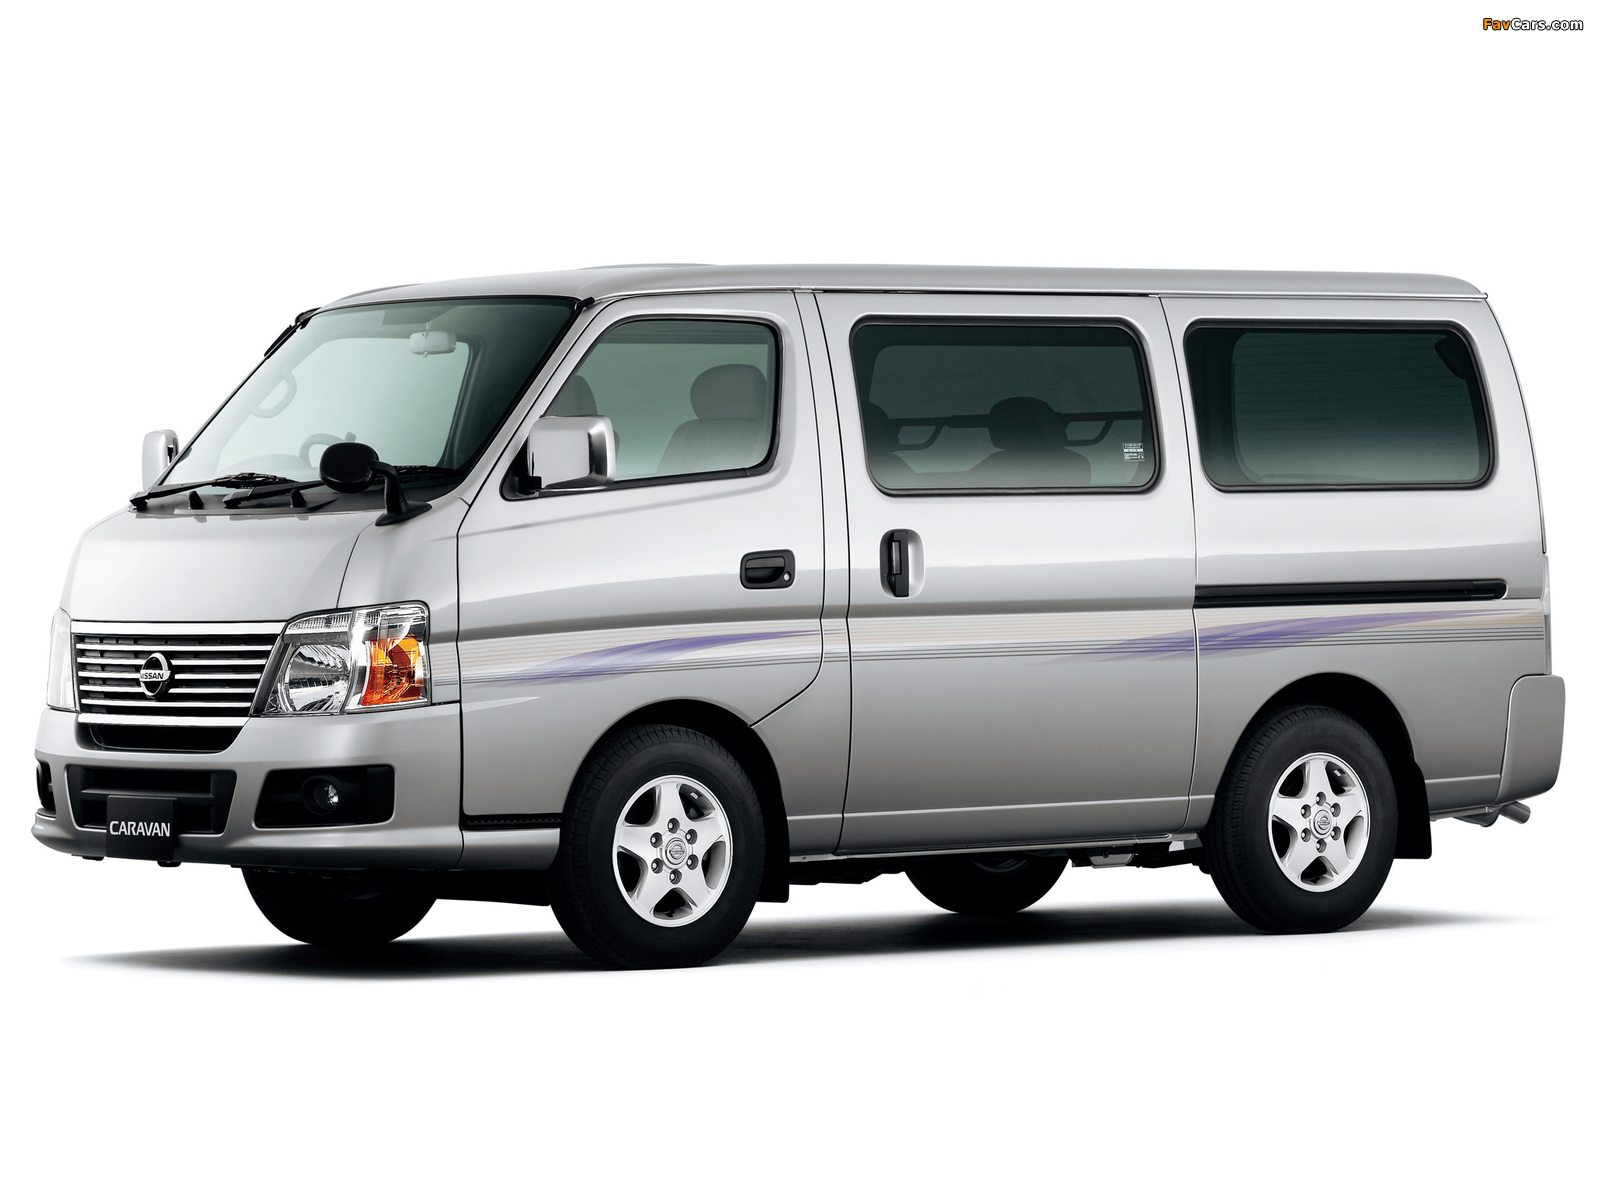 Nissan Caravan (E25) 2005 photos (1600 x 1200)